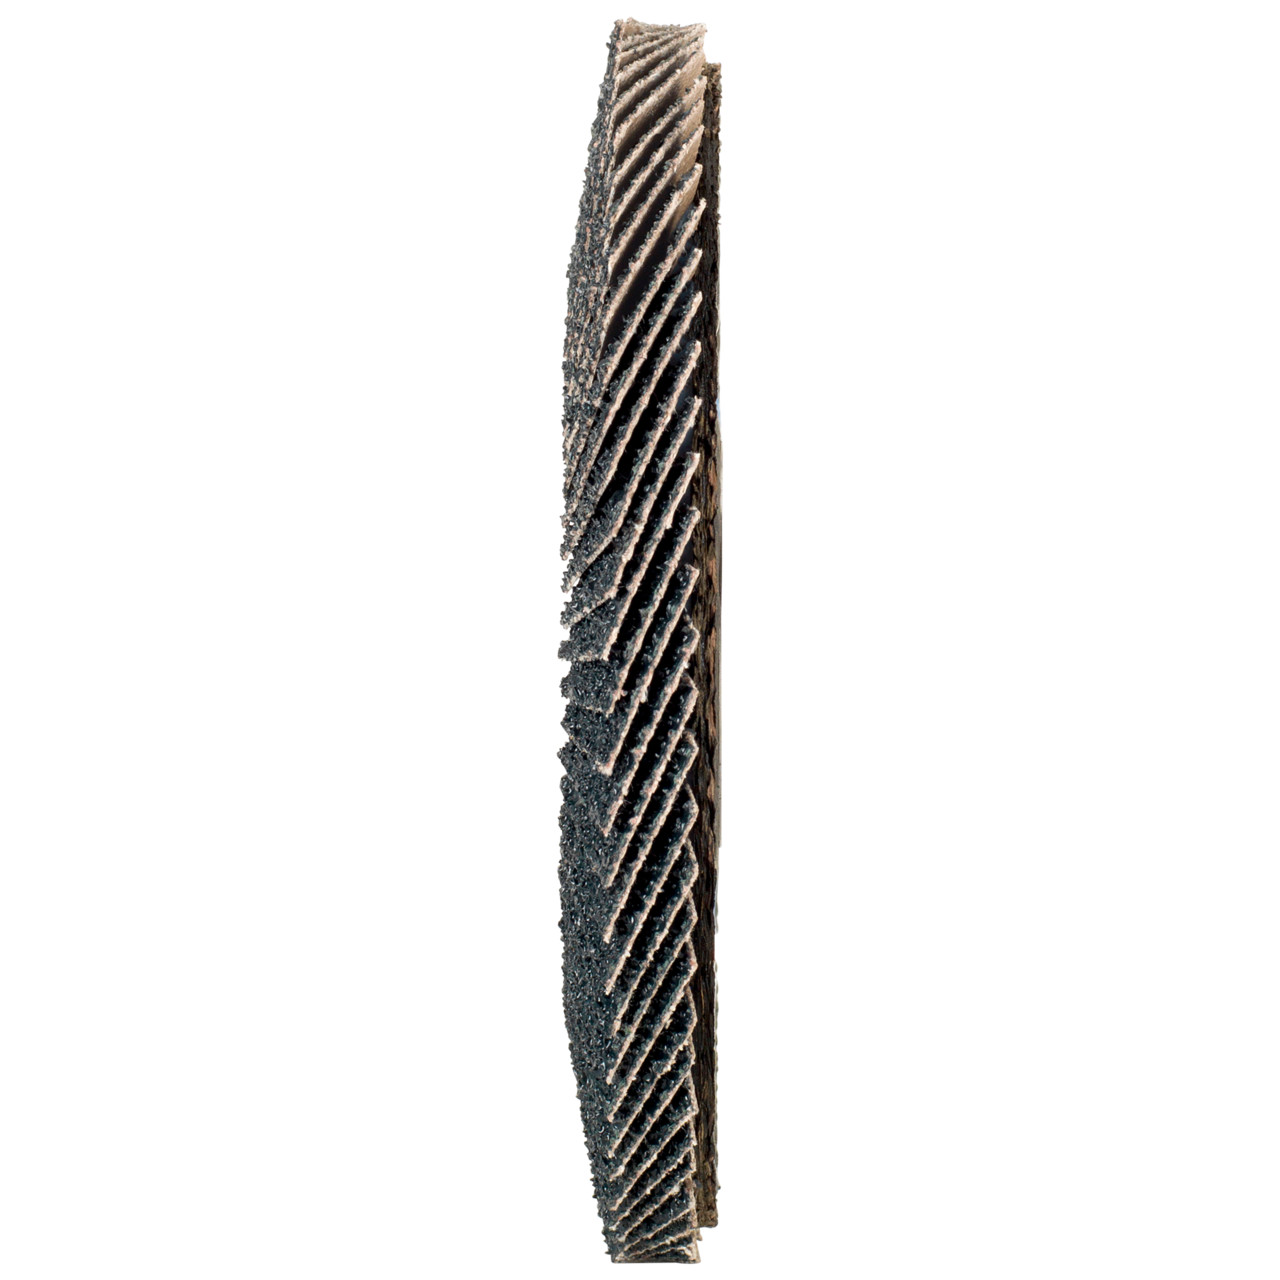 TYROLIT Fächerscheibe DxH 150x22,2 2in1 für Stahl & Edelstahl, P40, Form: 27A - gekröpfte Ausführung (Glasfaserträgerkörperausführung), Art. 519212